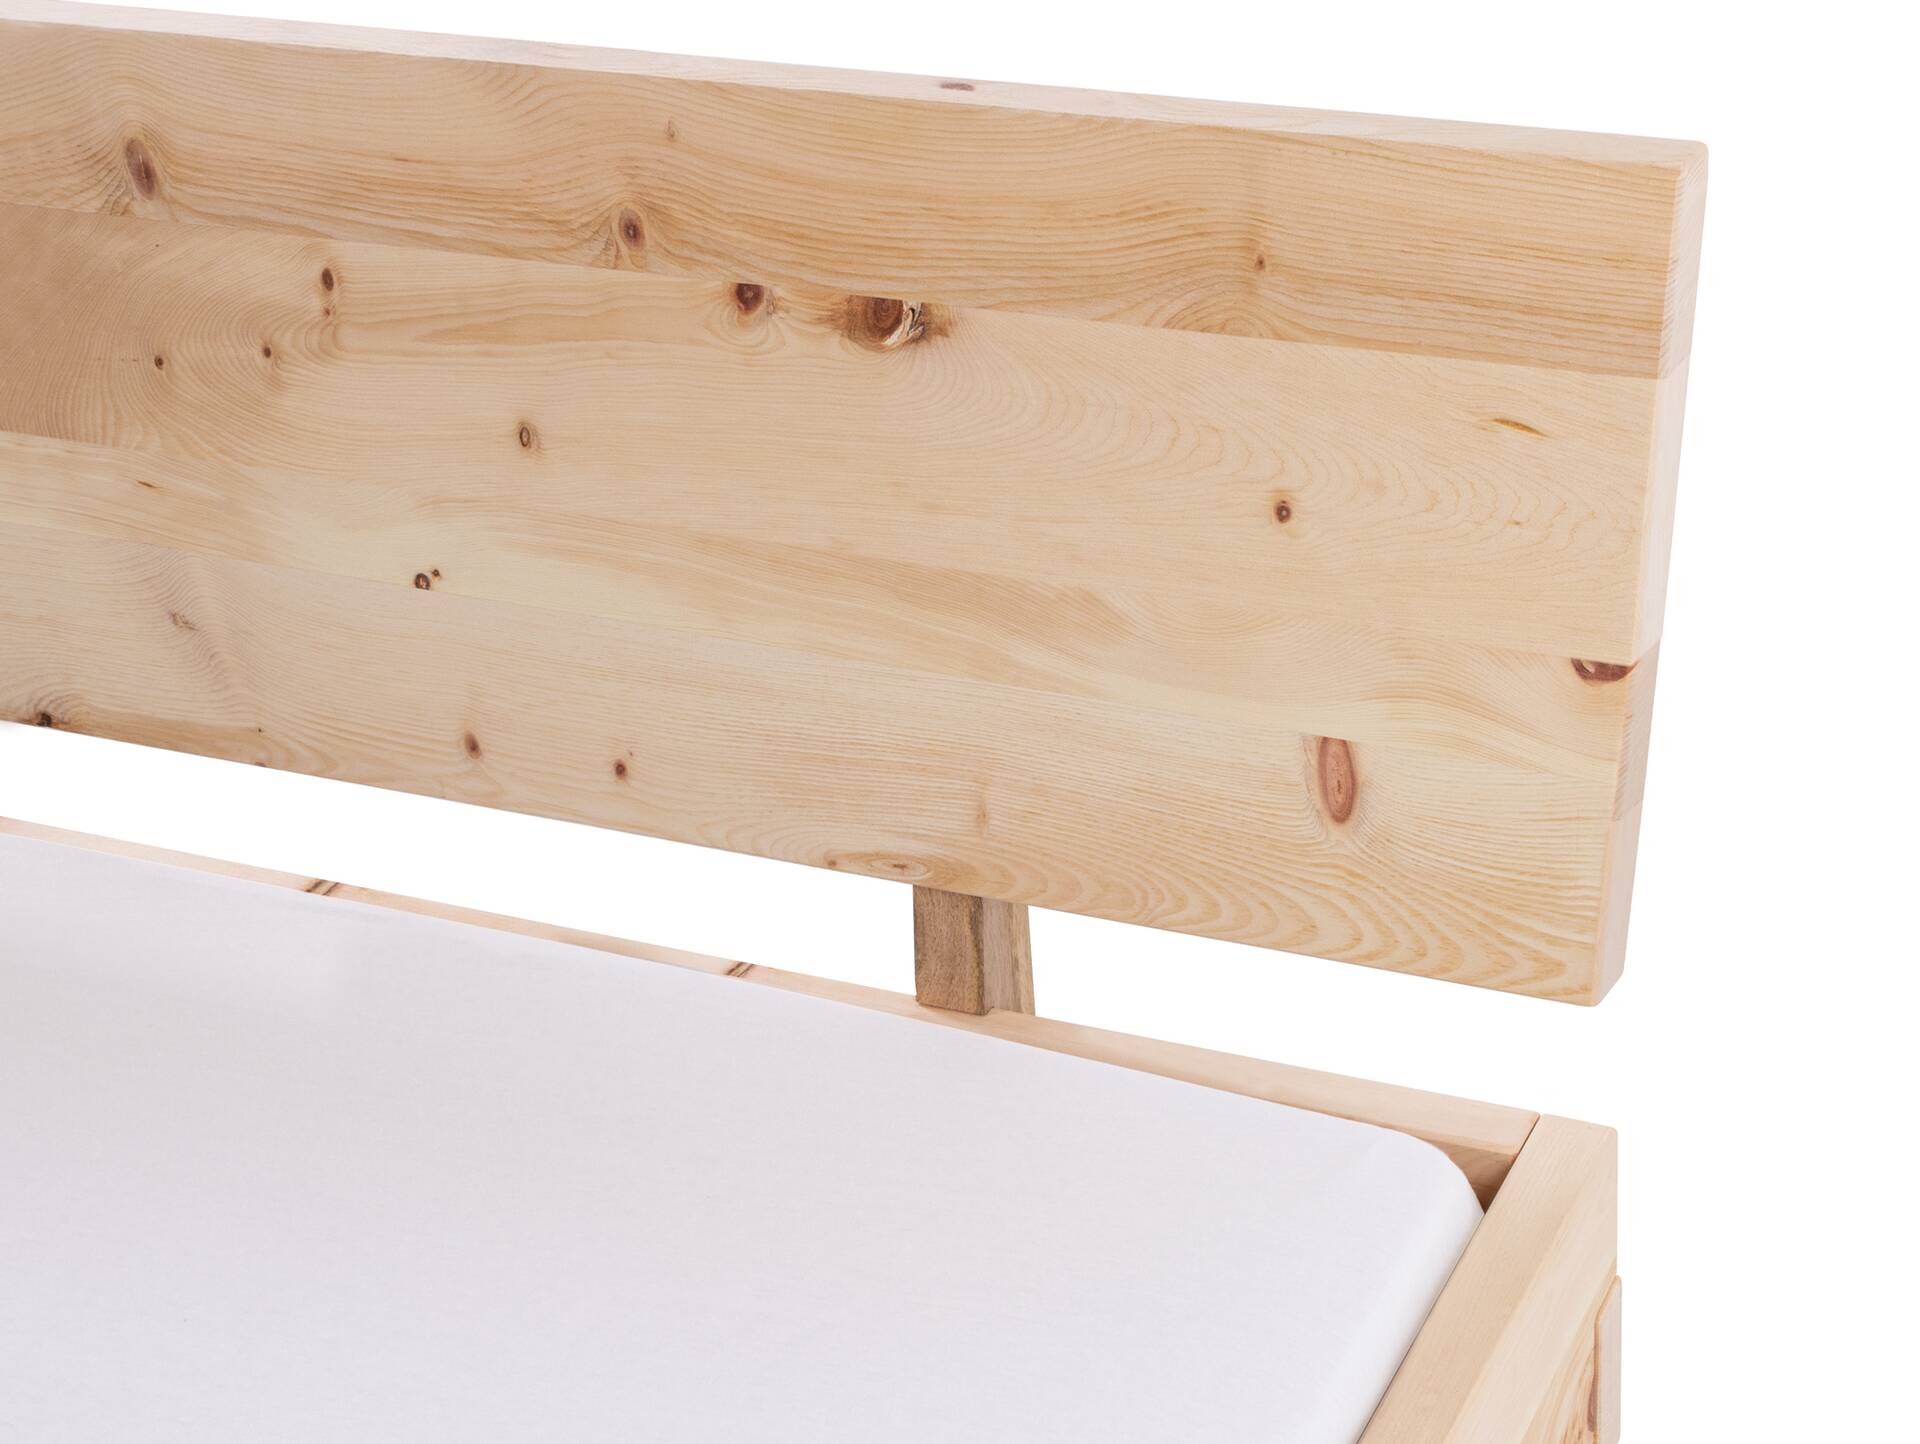 ZARUBA Zirbenbett mit Holz-Kufen/Holzkopfteil, Material Massivholz, Zirbe unbehandelt, mit/ohne Kopfteil 90 x 200 cm | mit Kopfteil